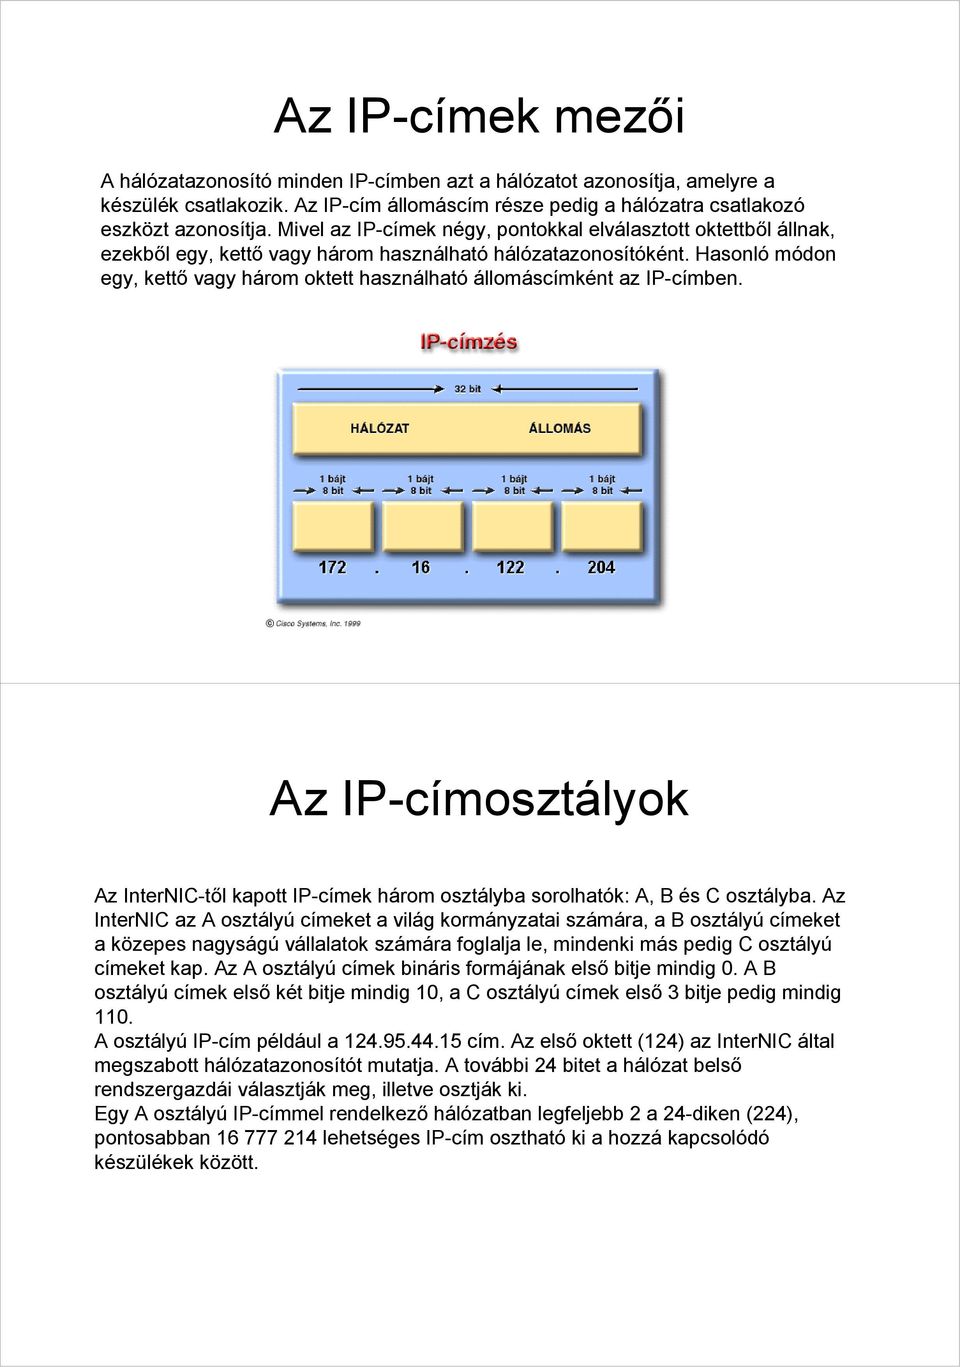 Hasonló módon egy, kettő vagy három oktett használható állomáscímként az IP-címben. Az IP-címosztályok Az InterNIC-től kapott IP-címek három osztályba sorolhatók: A, B és C osztályba.